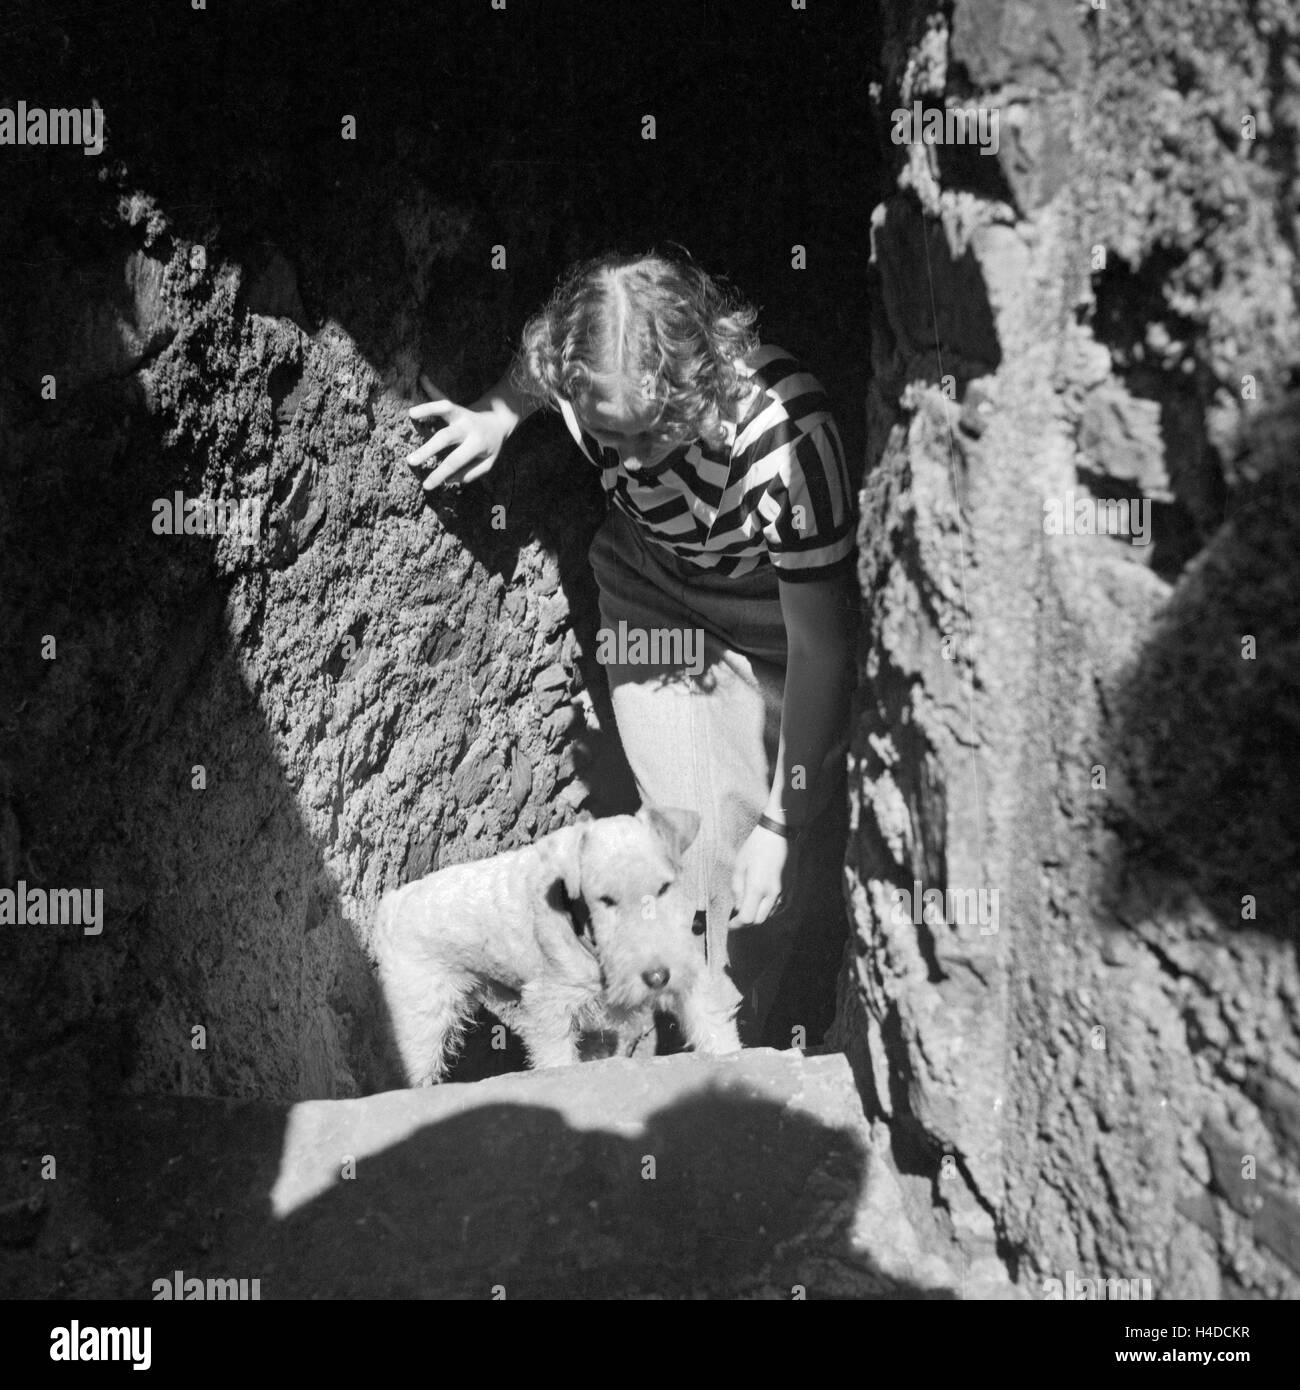 Eine Frau mit ihrem Foxterrier Besichtigungstour in Deutschland, 1930er Jahre. Une femme avec son fox-terrier sur une visite guidée, l'Allemagne des années 1930. Banque D'Images